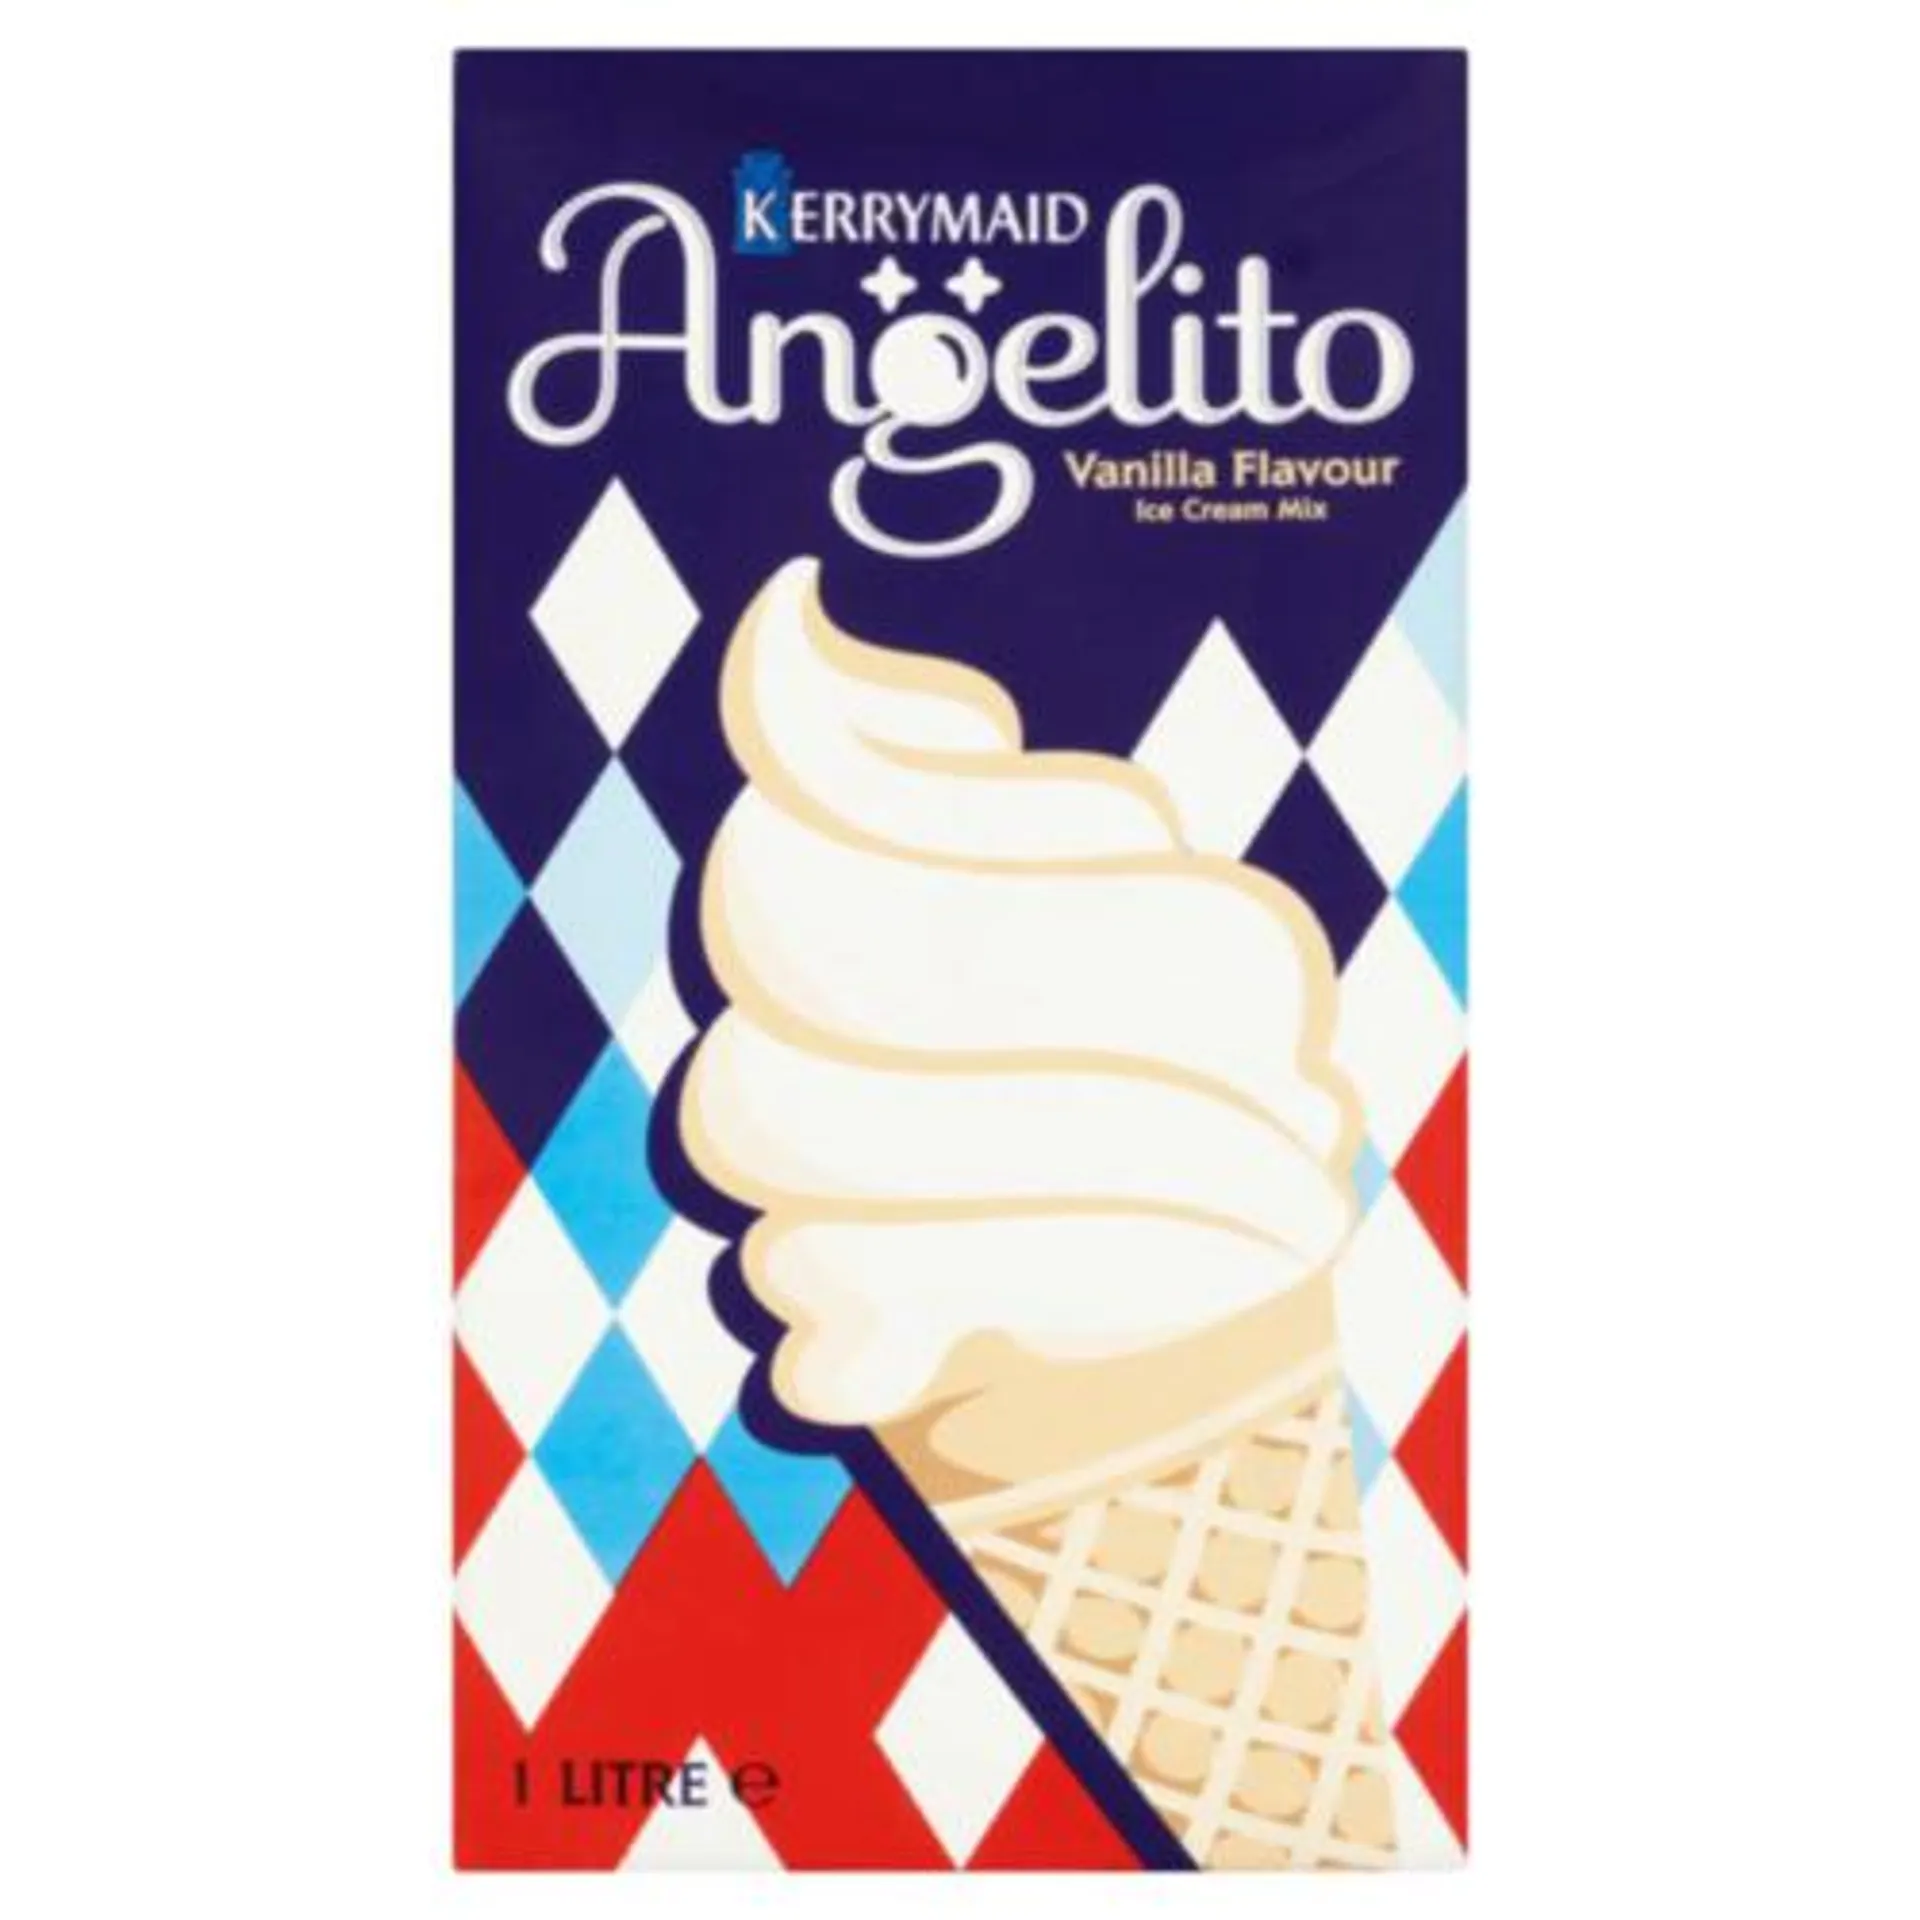 Angelito Vanilla Flavour Ice Cream Mix